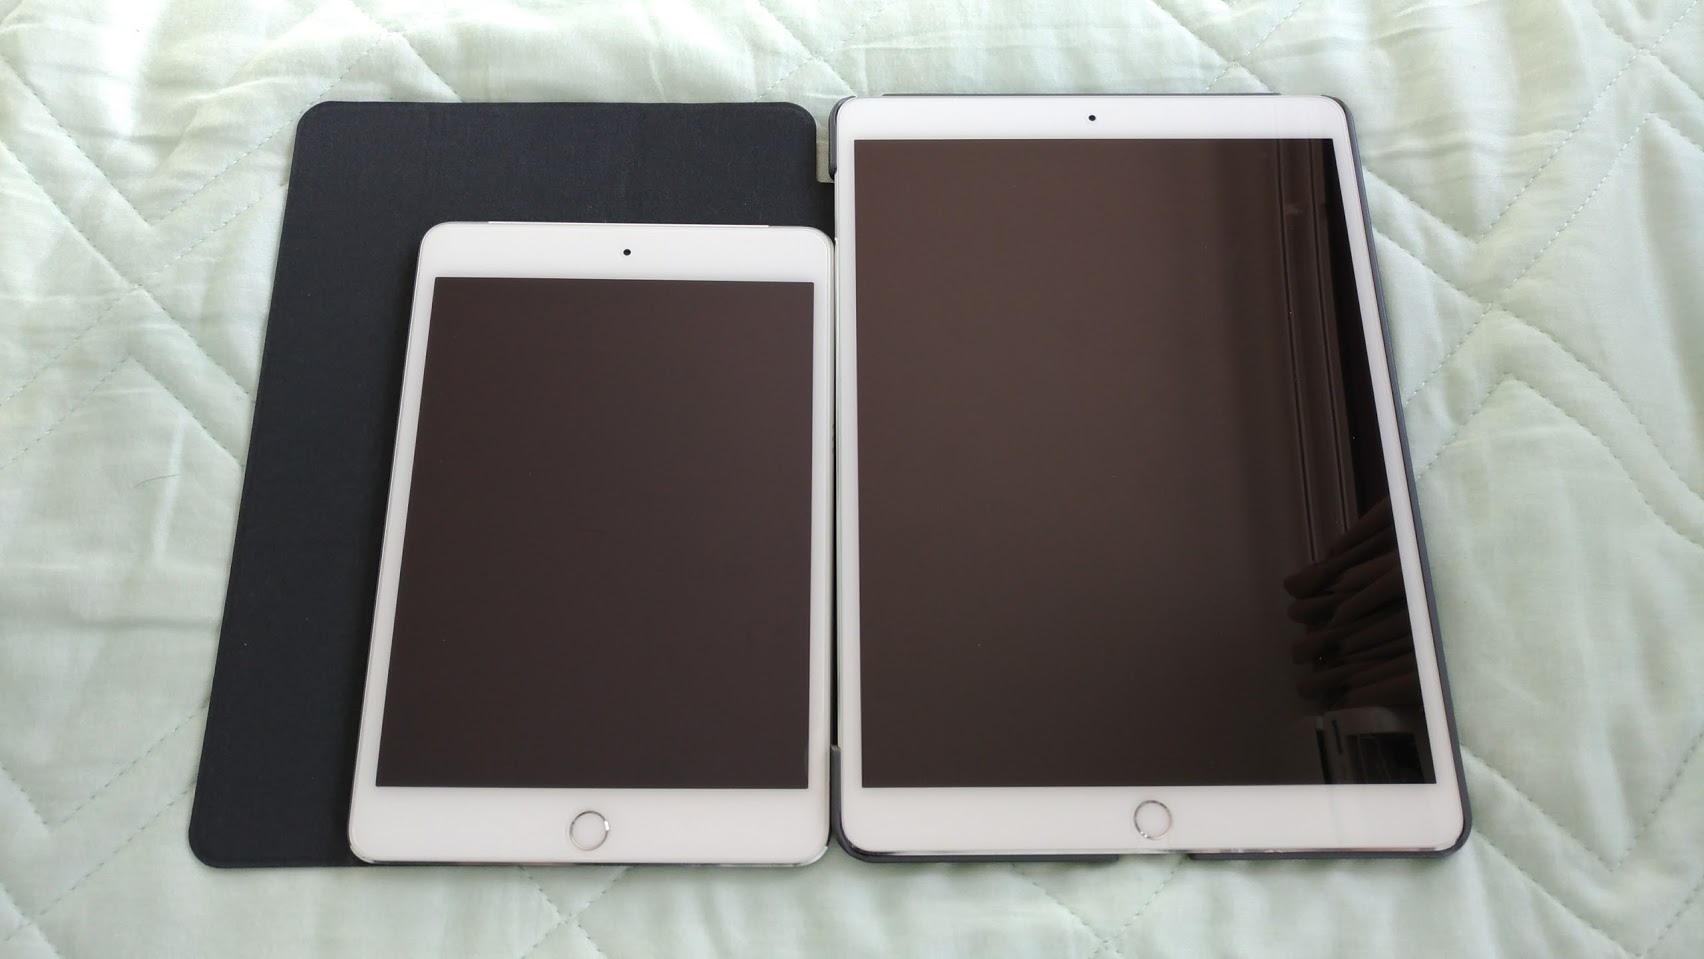 iPadPro10.5インチとiPadmini4を並べて比較している写真